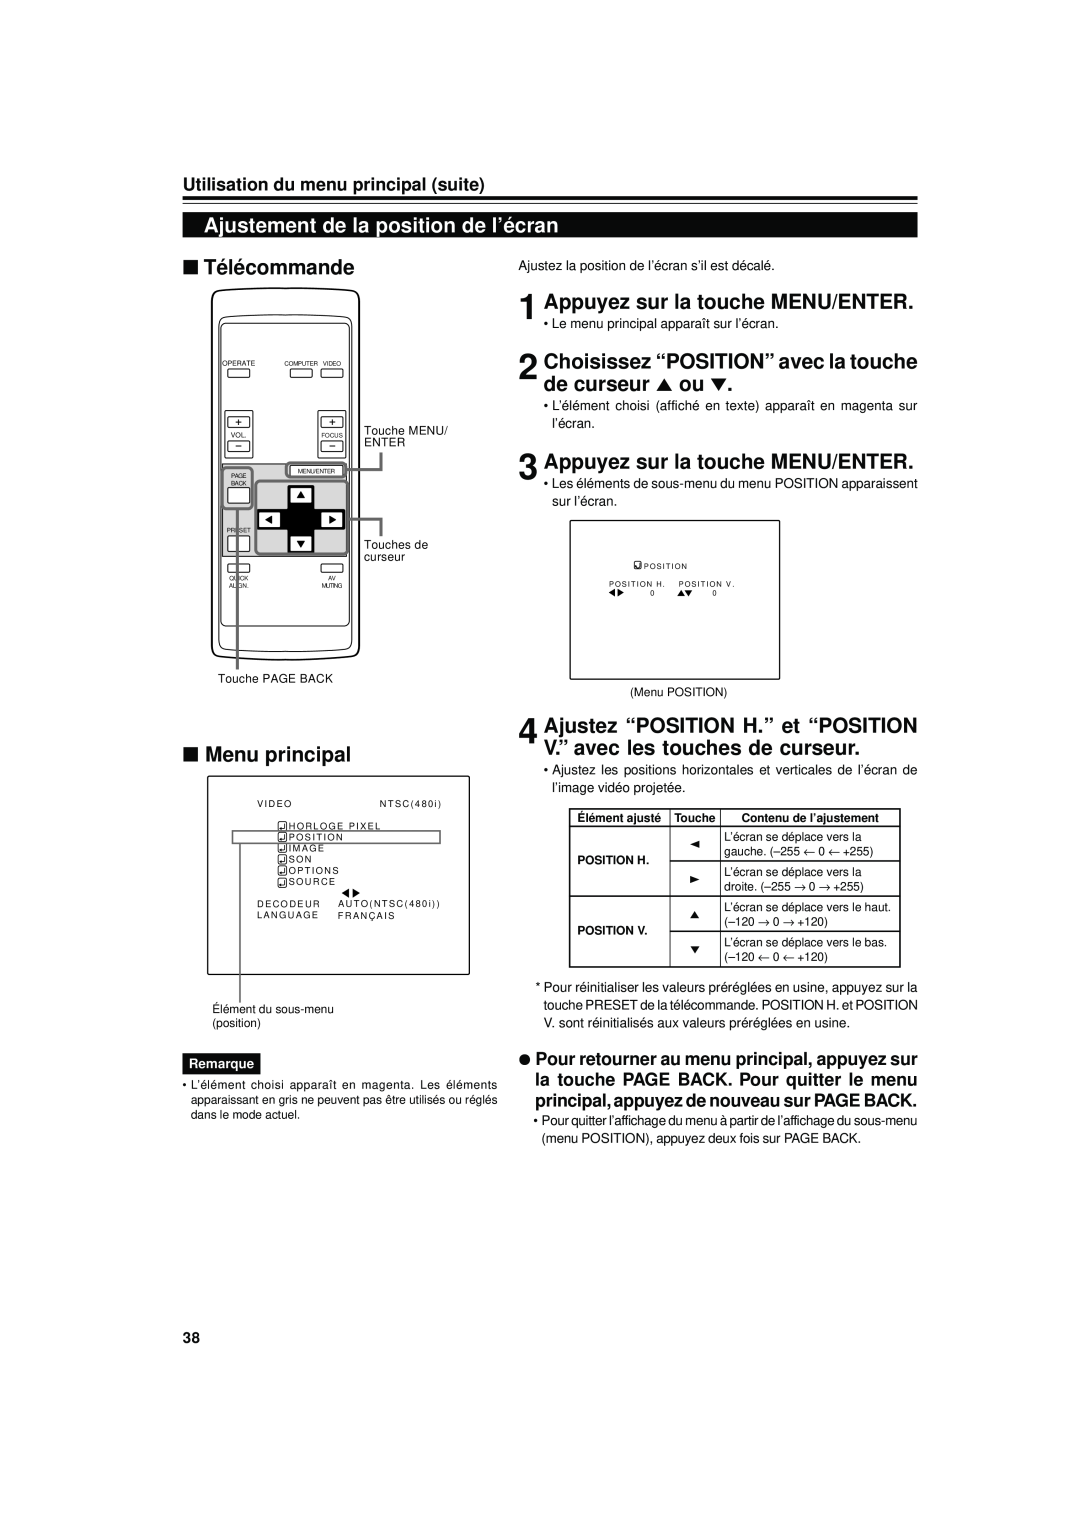 JVC DLA-S15U Ajustement de la position de l’écran, Choisissez “POSITION” avec la touche de curseur 5 ou, Télécommande 